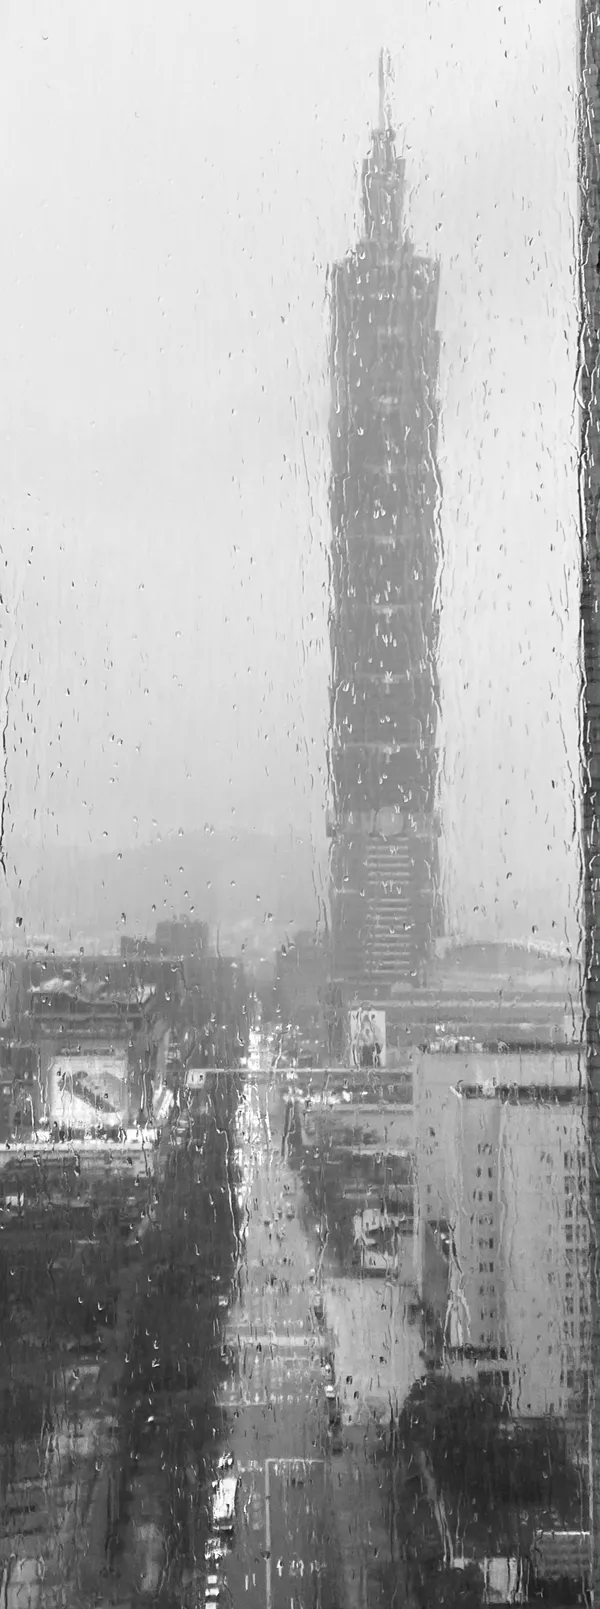 Taipei 101 in Taiwan thumbnail